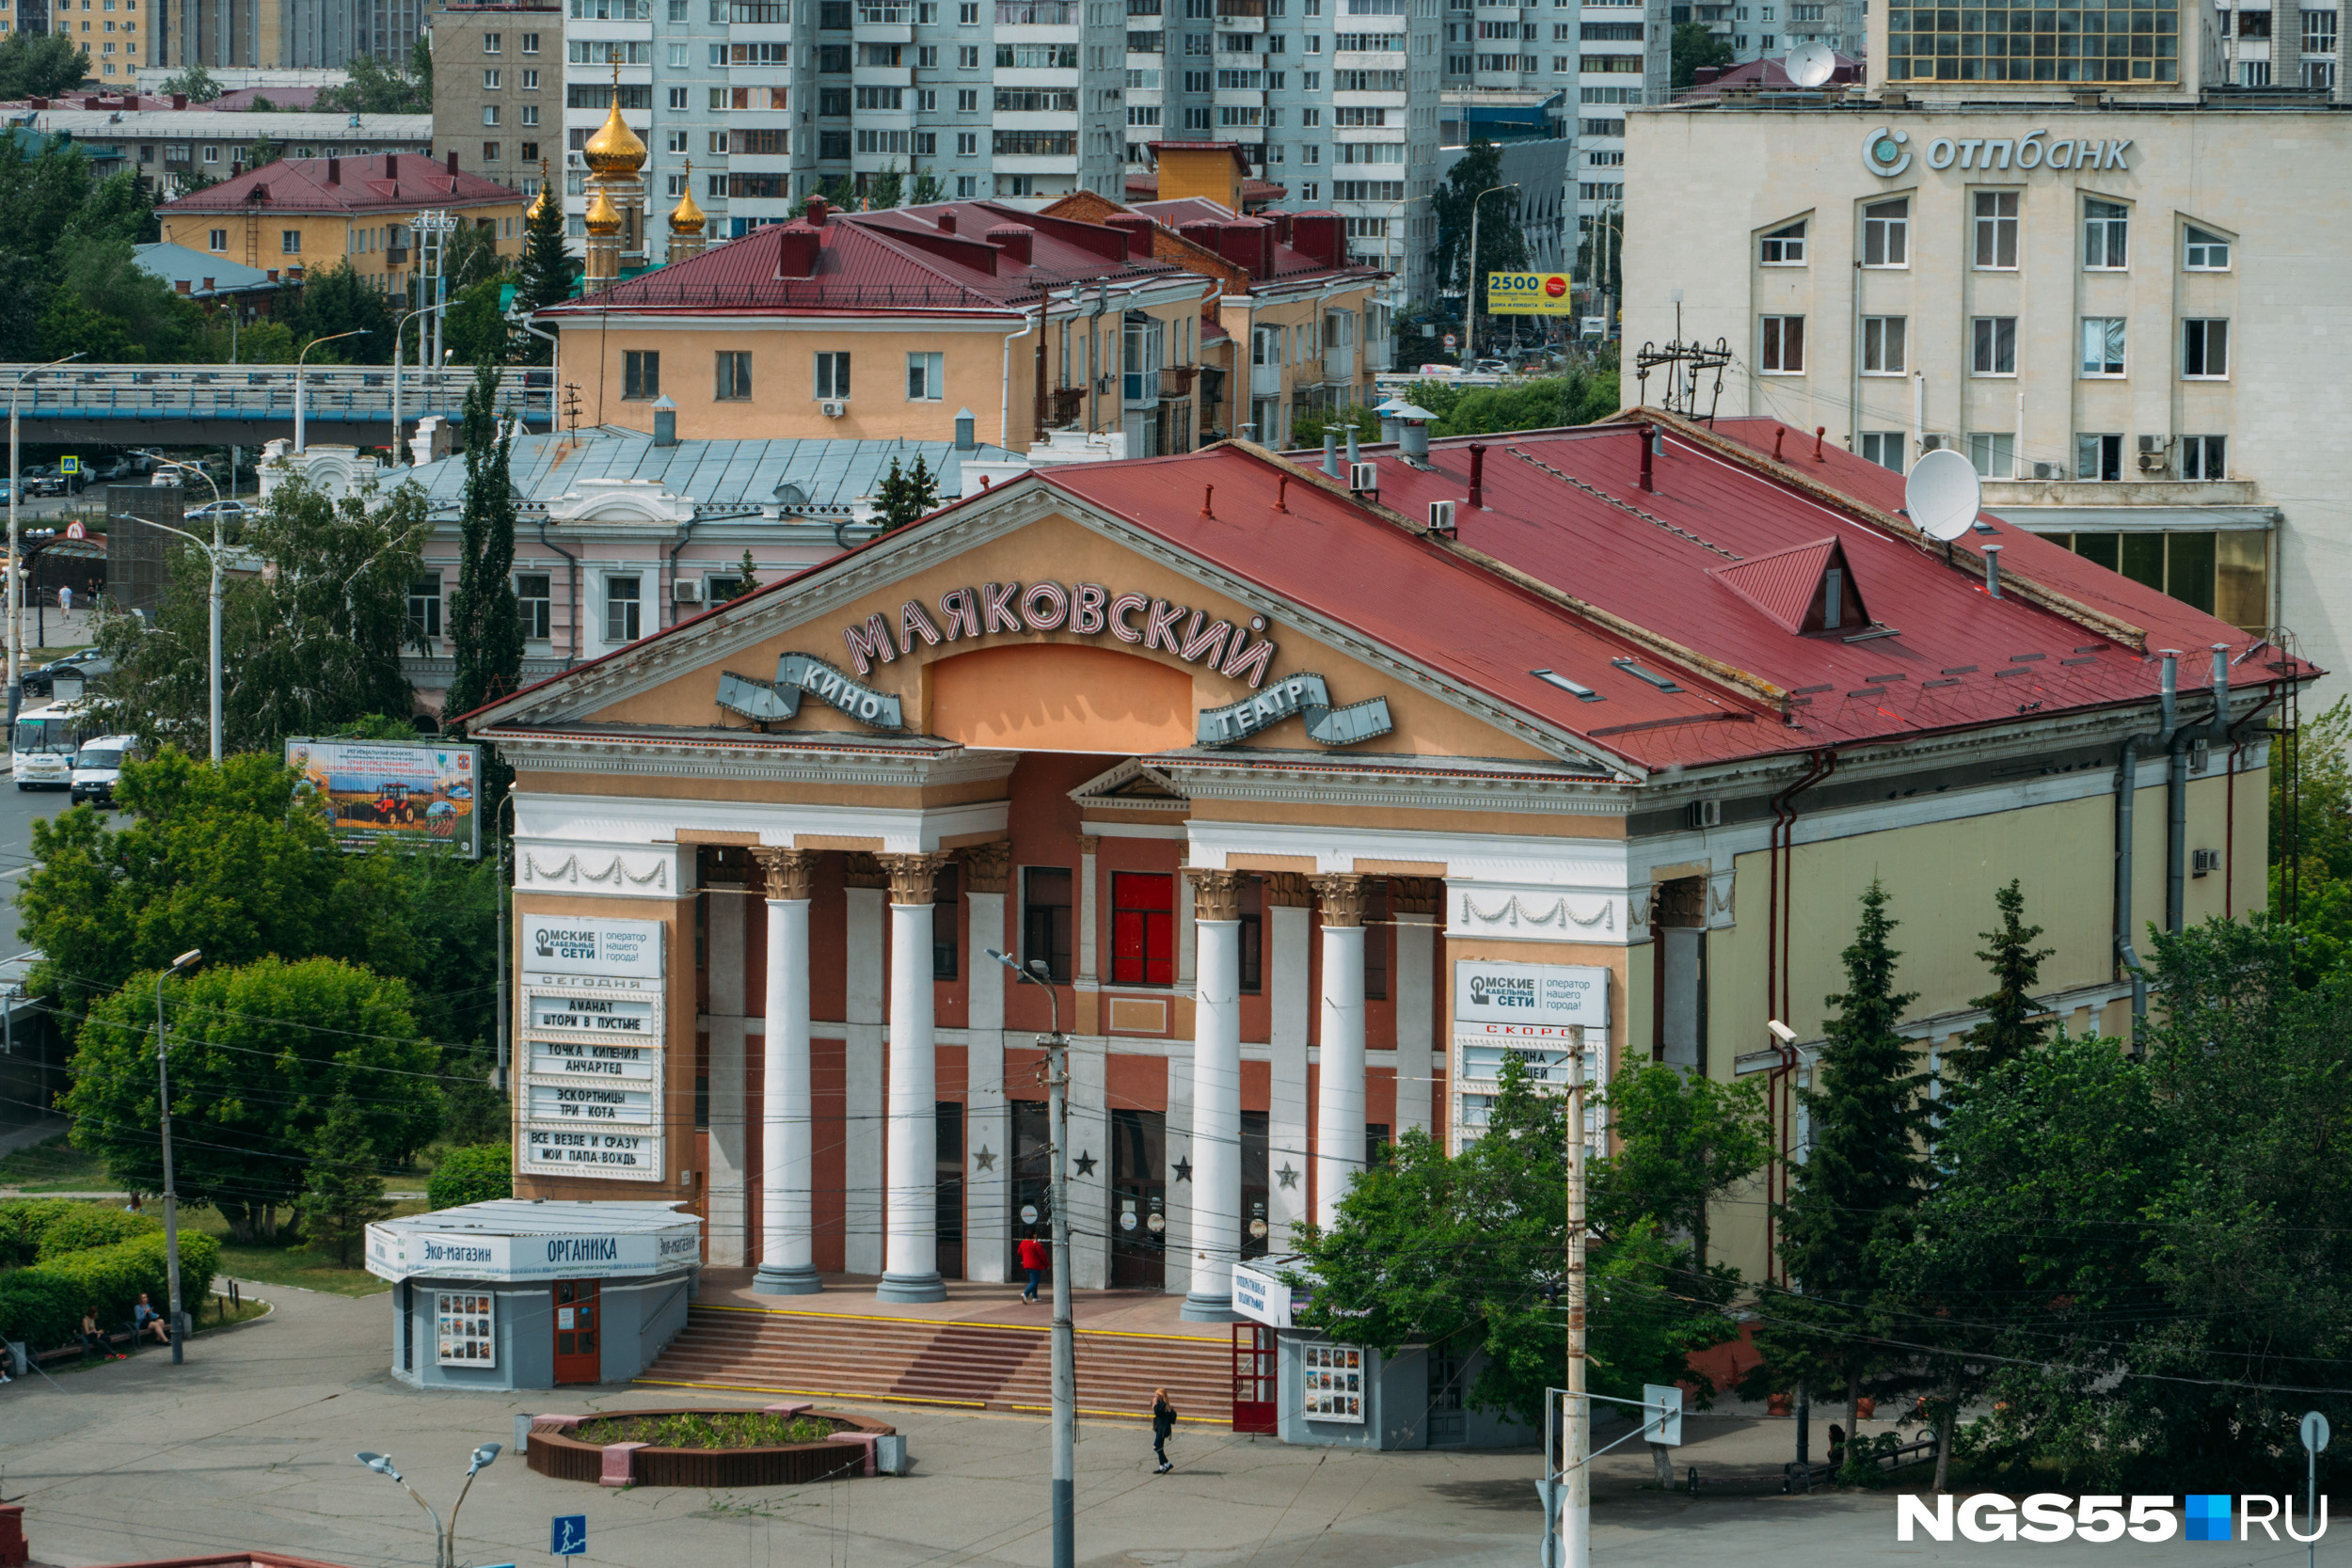 Первое, на что падает взор с колокольной площадки, — кинотеатр «Маяковский», расположенный через дорогу